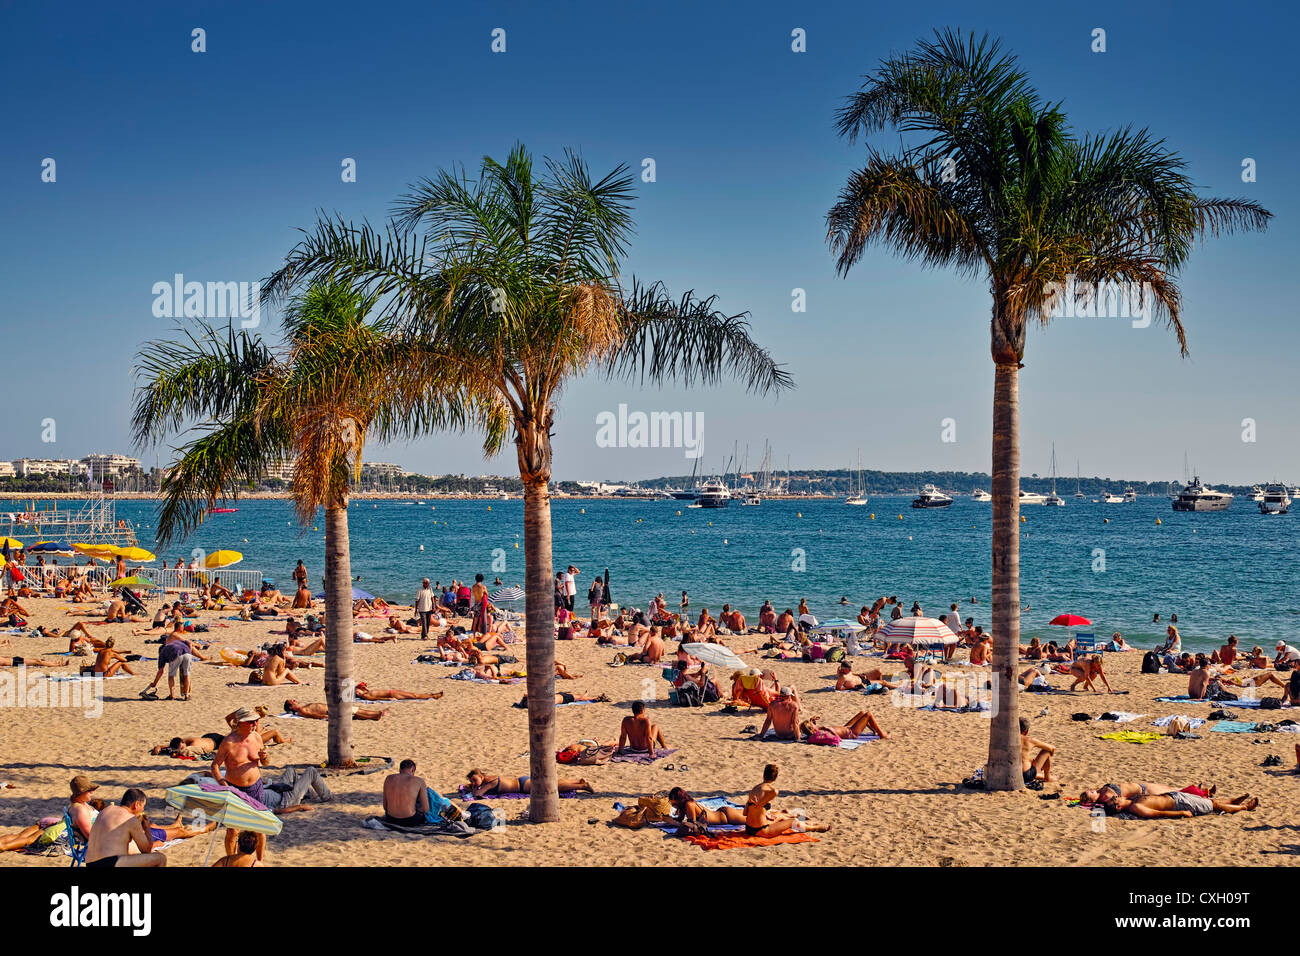 La plage à Cannes, France Banque D'Images